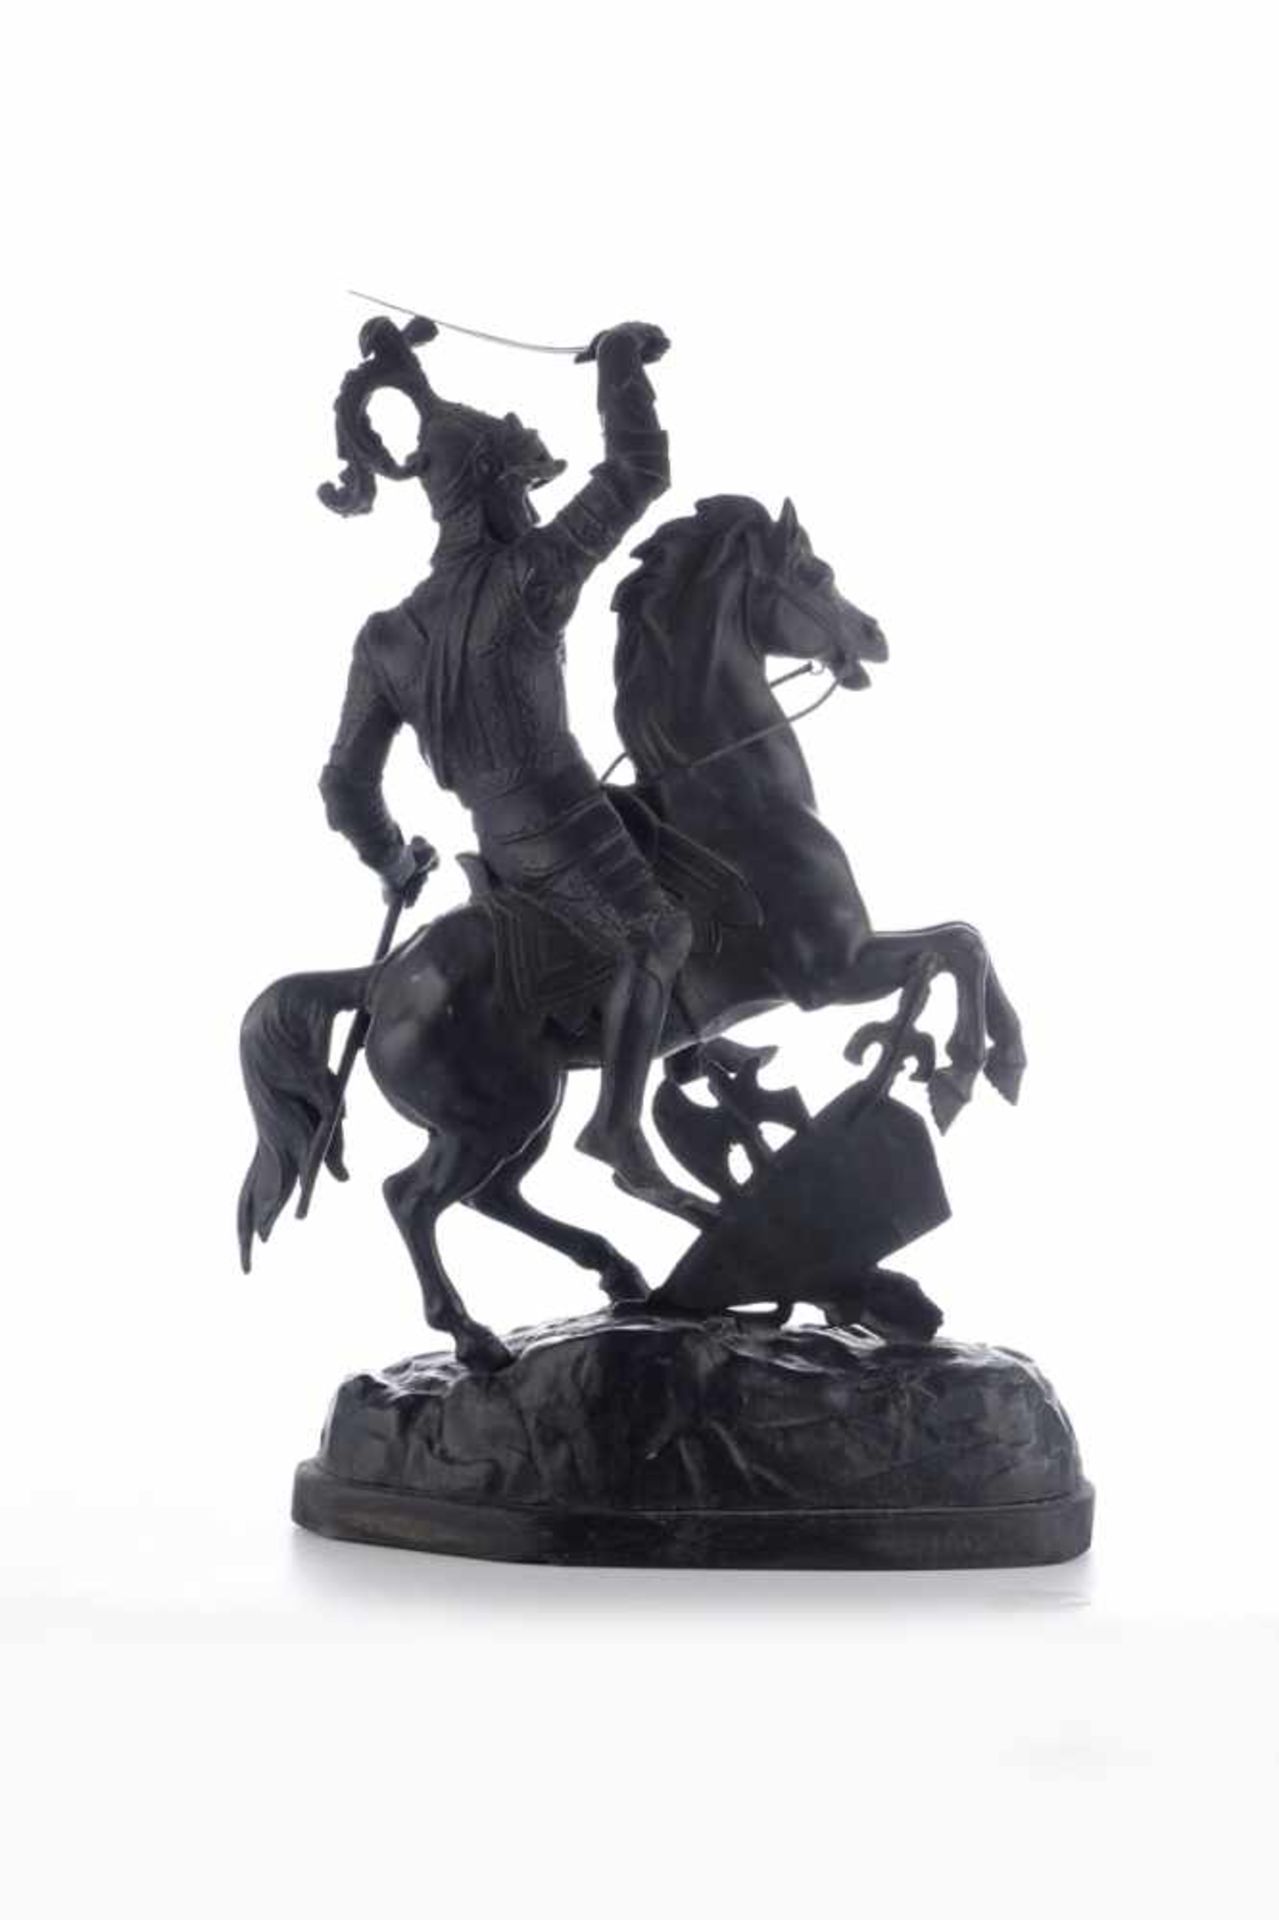 Kämpfende Ritter zu Pferde.Antike Skulpturen, Gegenstücke um 1880, Zinkguss geschwärzt. - Image 5 of 8